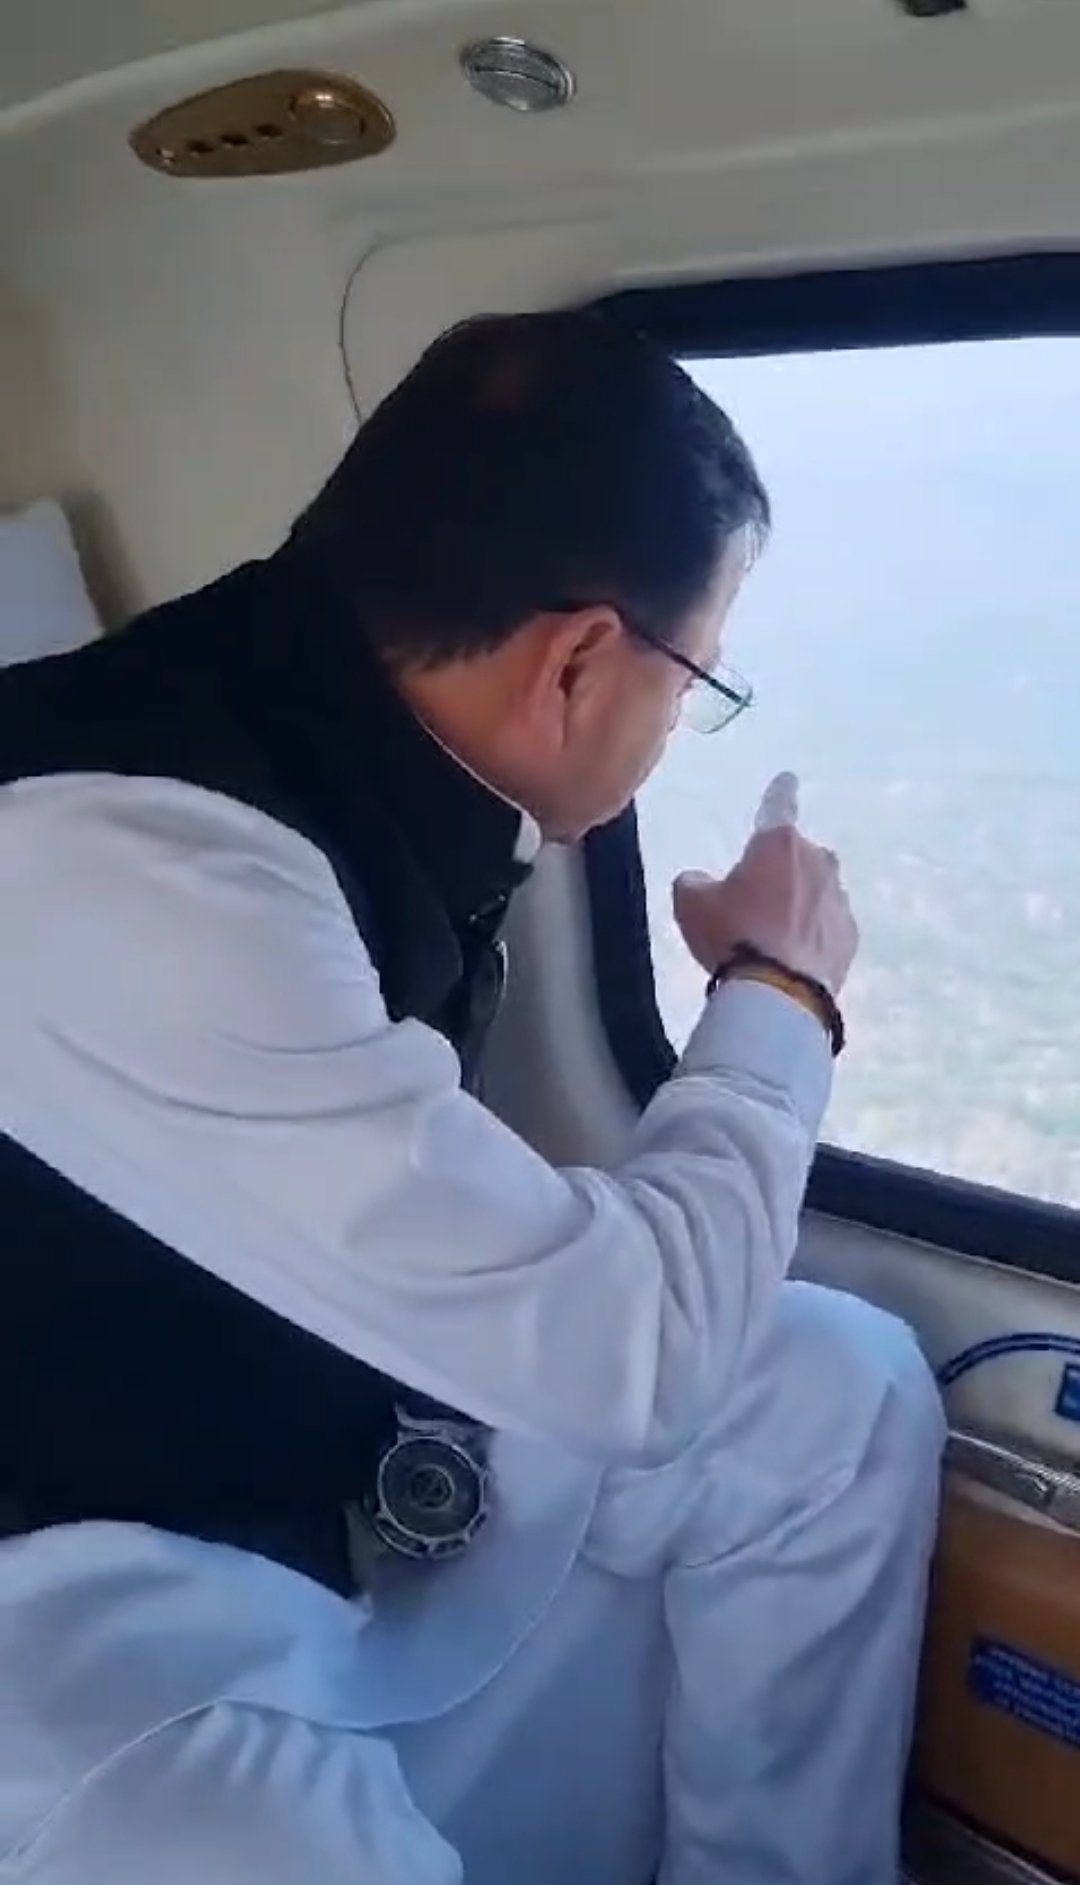 मुख्यमंत्री धामी ने हवाई सर्वेक्षण कर वनाग्नि की घटनाओं का लिया जायजा, बोले- जल्द पा लिया जाएगा काबू